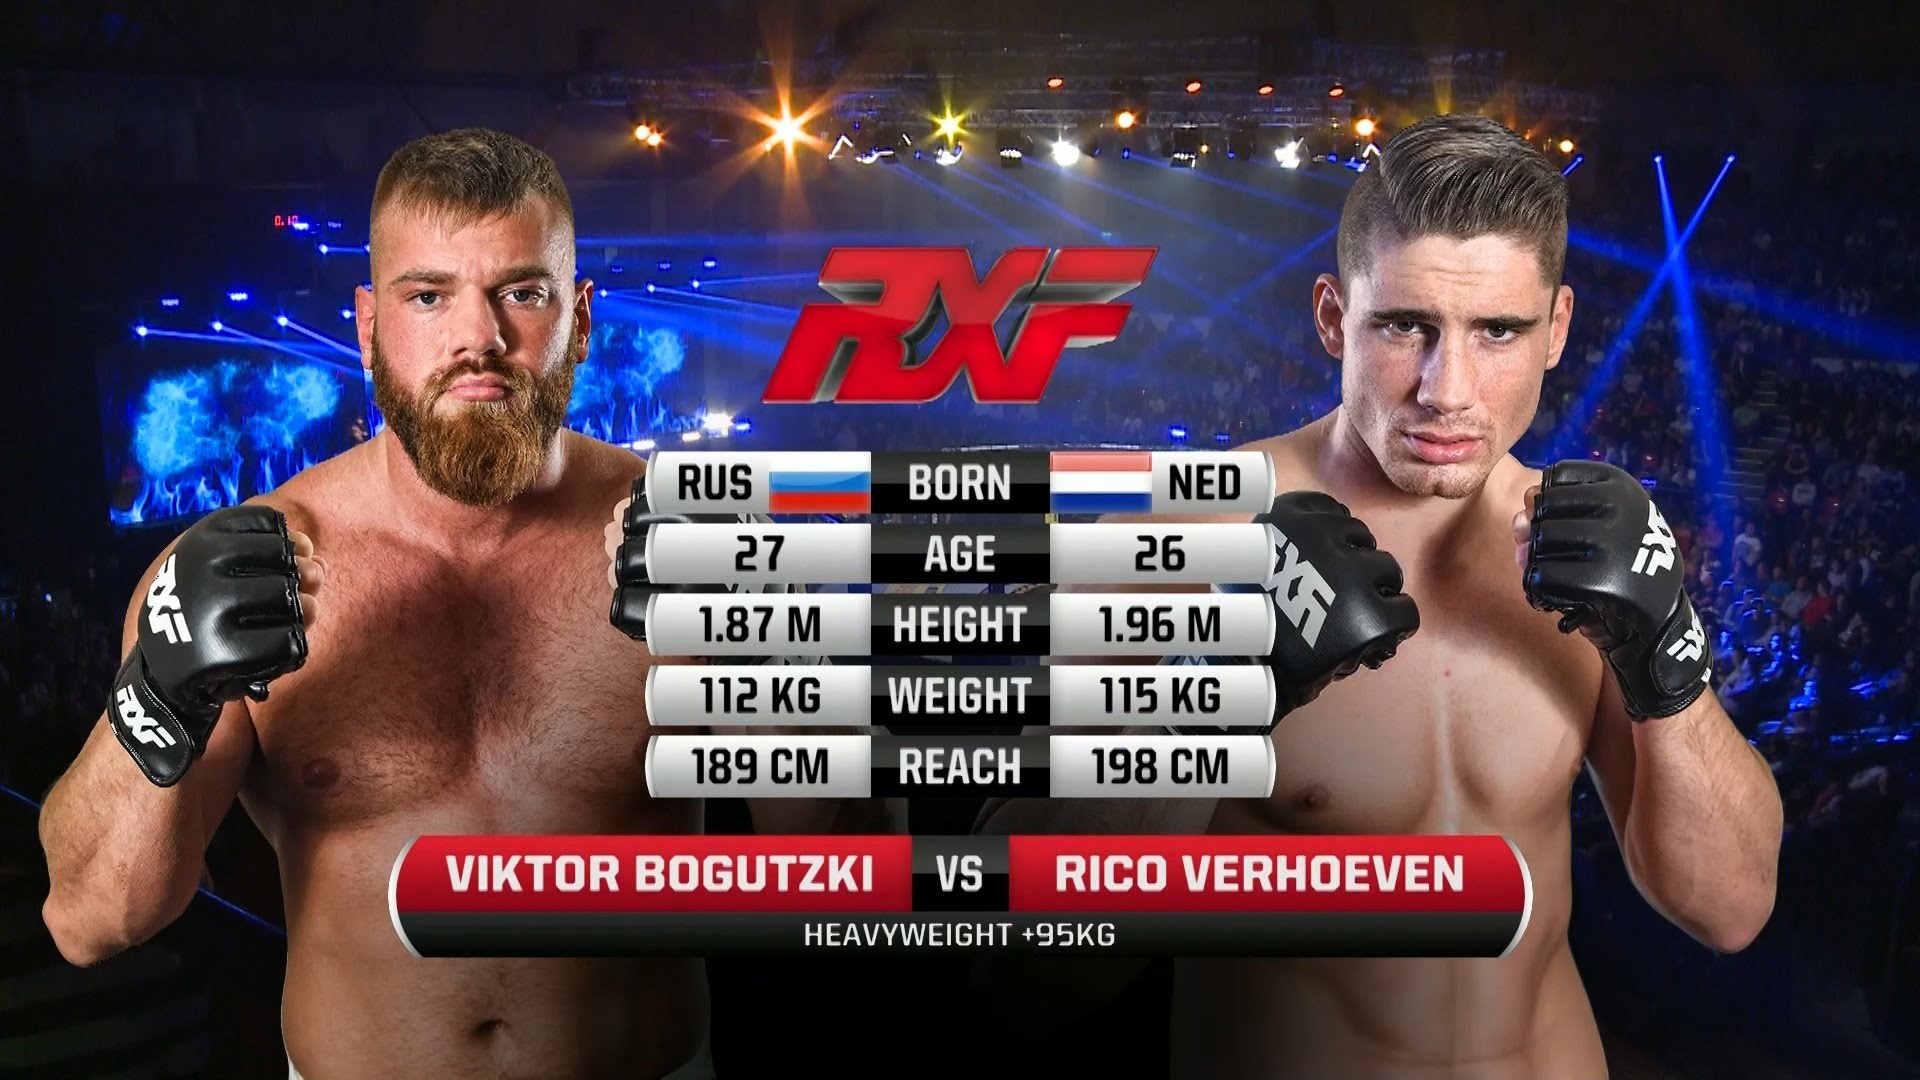 Rico Verhoeven (Debut) vs Viktor Bogutzki Full Fight MMA Video